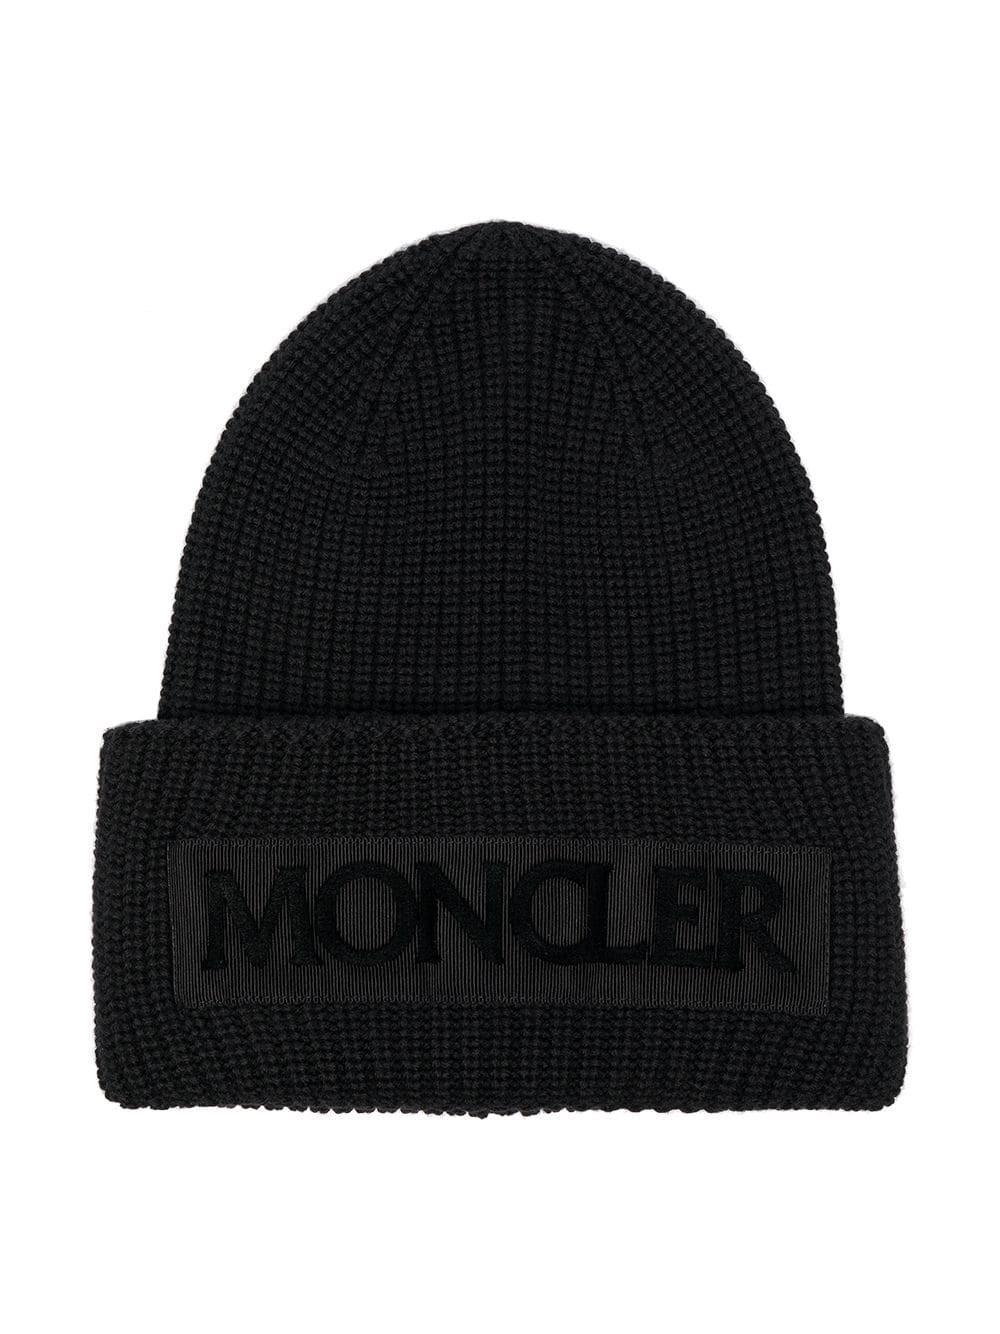 Moncler Women's 9960500979c4999 Black Wool Hat in Black - Lyst